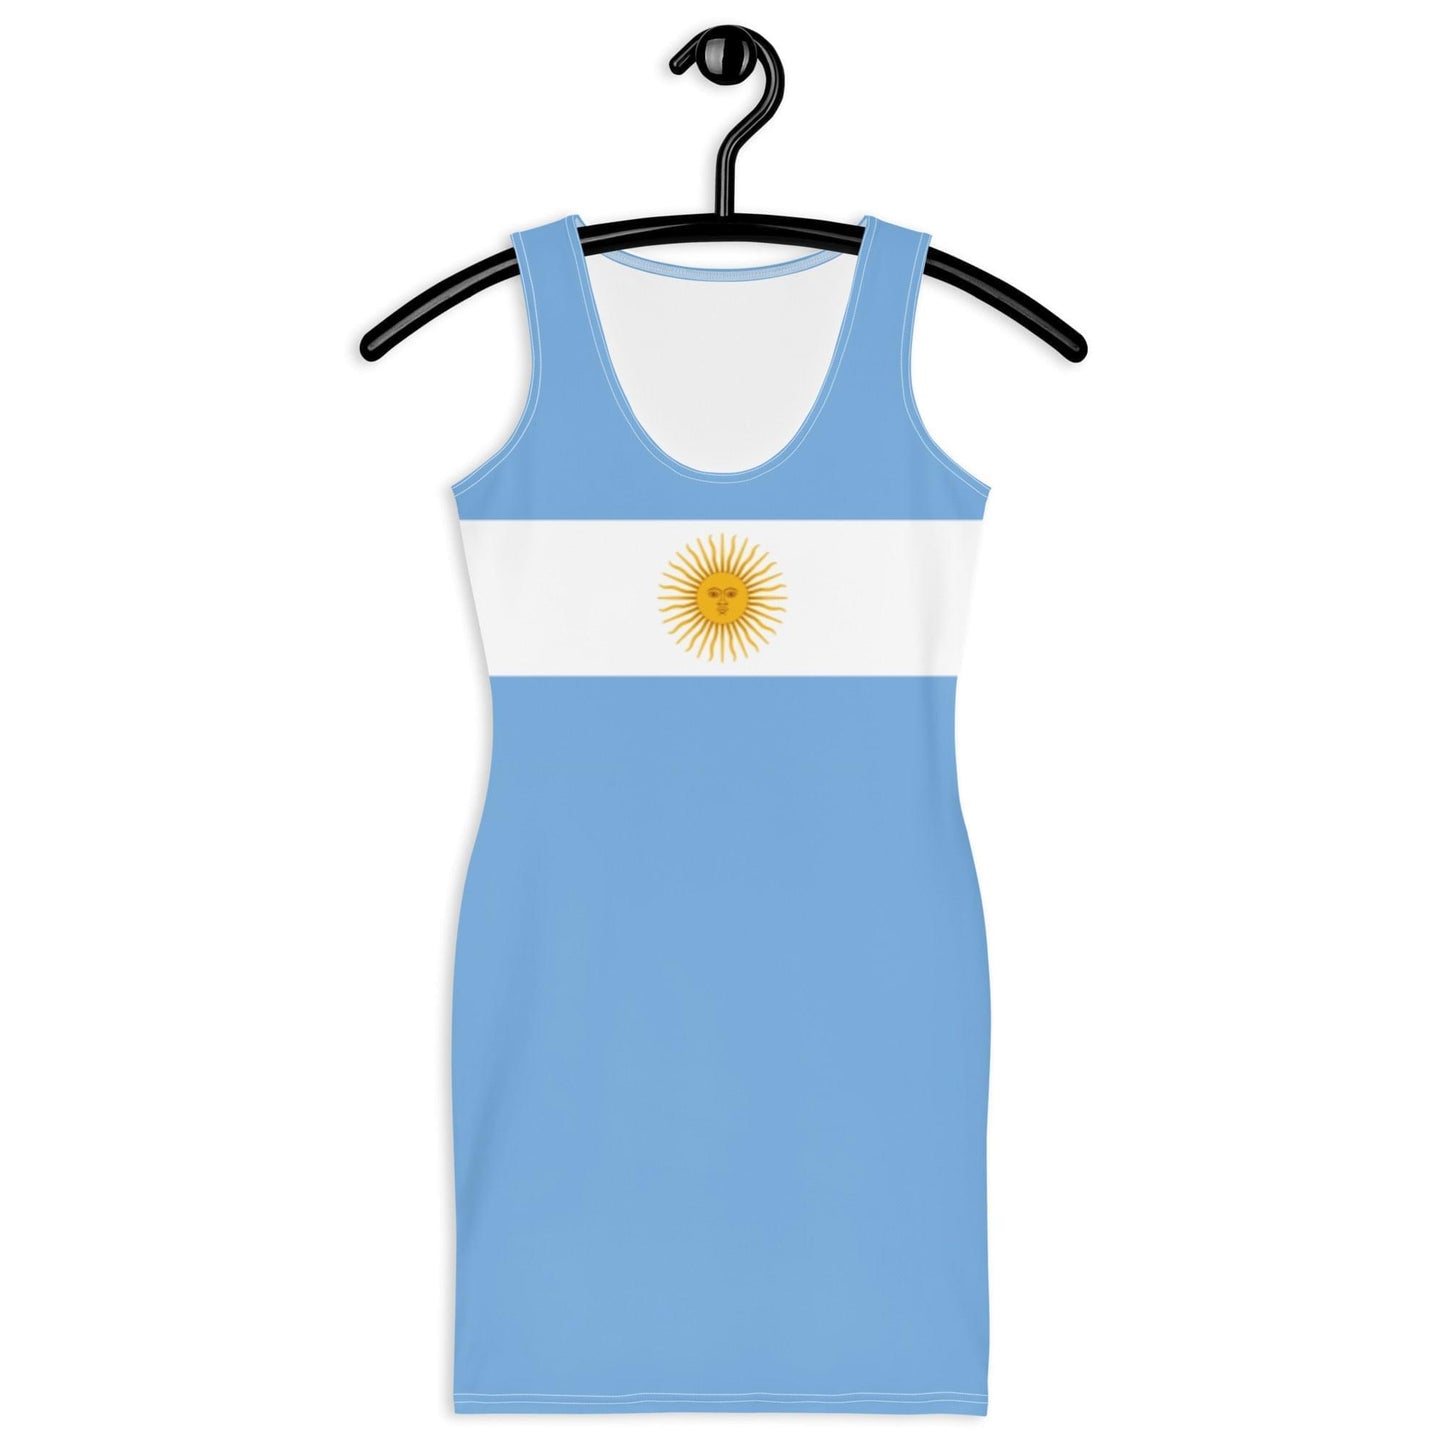 Vestido Argentina Con Colores De La Bandera Argentina / Vestido Celeste